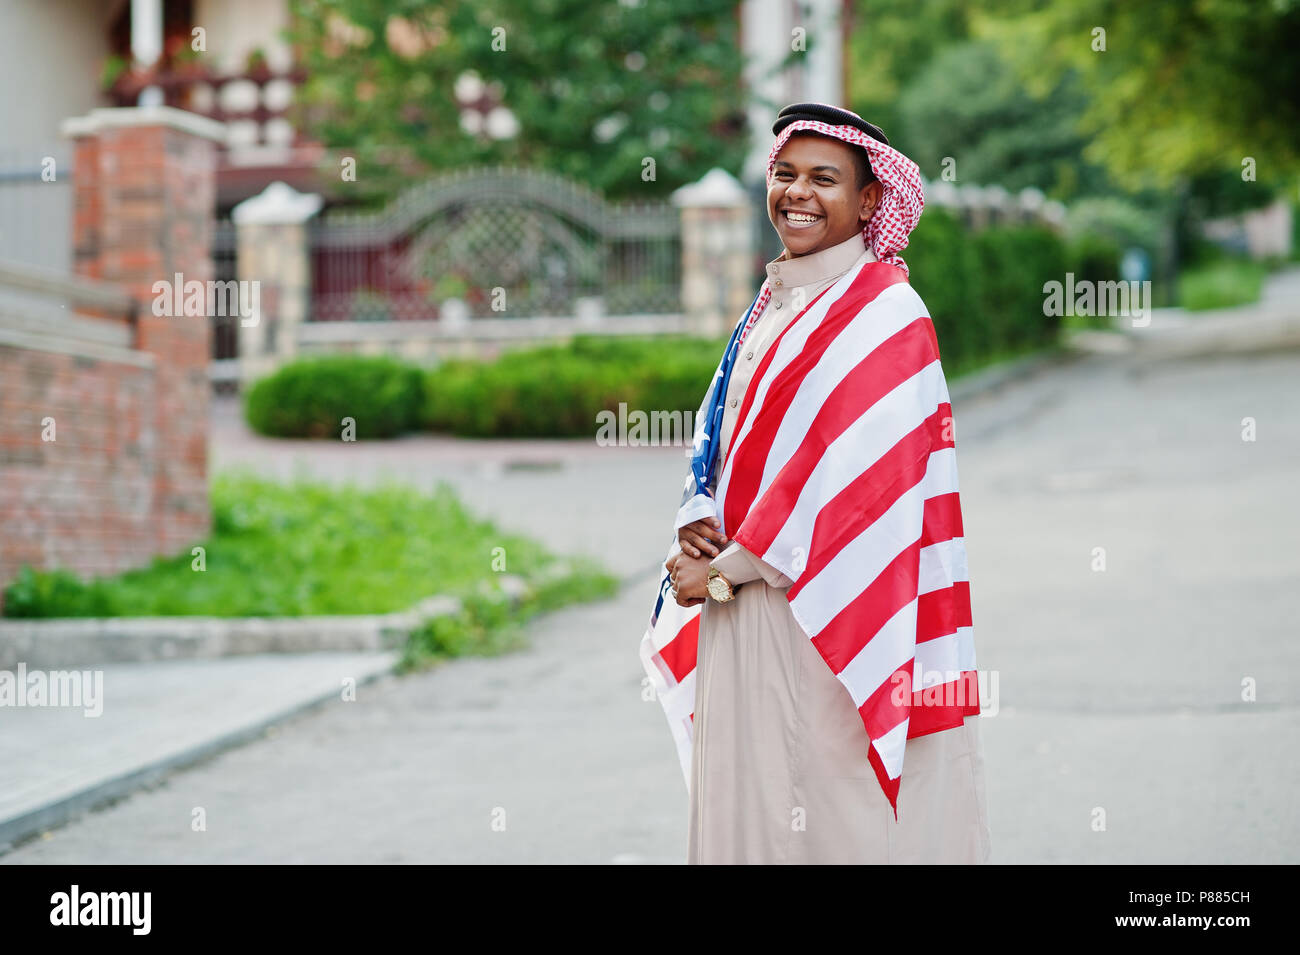 Im Nahen und Mittleren Osten arabischer Mann auf der Straße mit USA-Flagge gestellt. Amerika und arabischen Ländern Konzept. Stockfoto